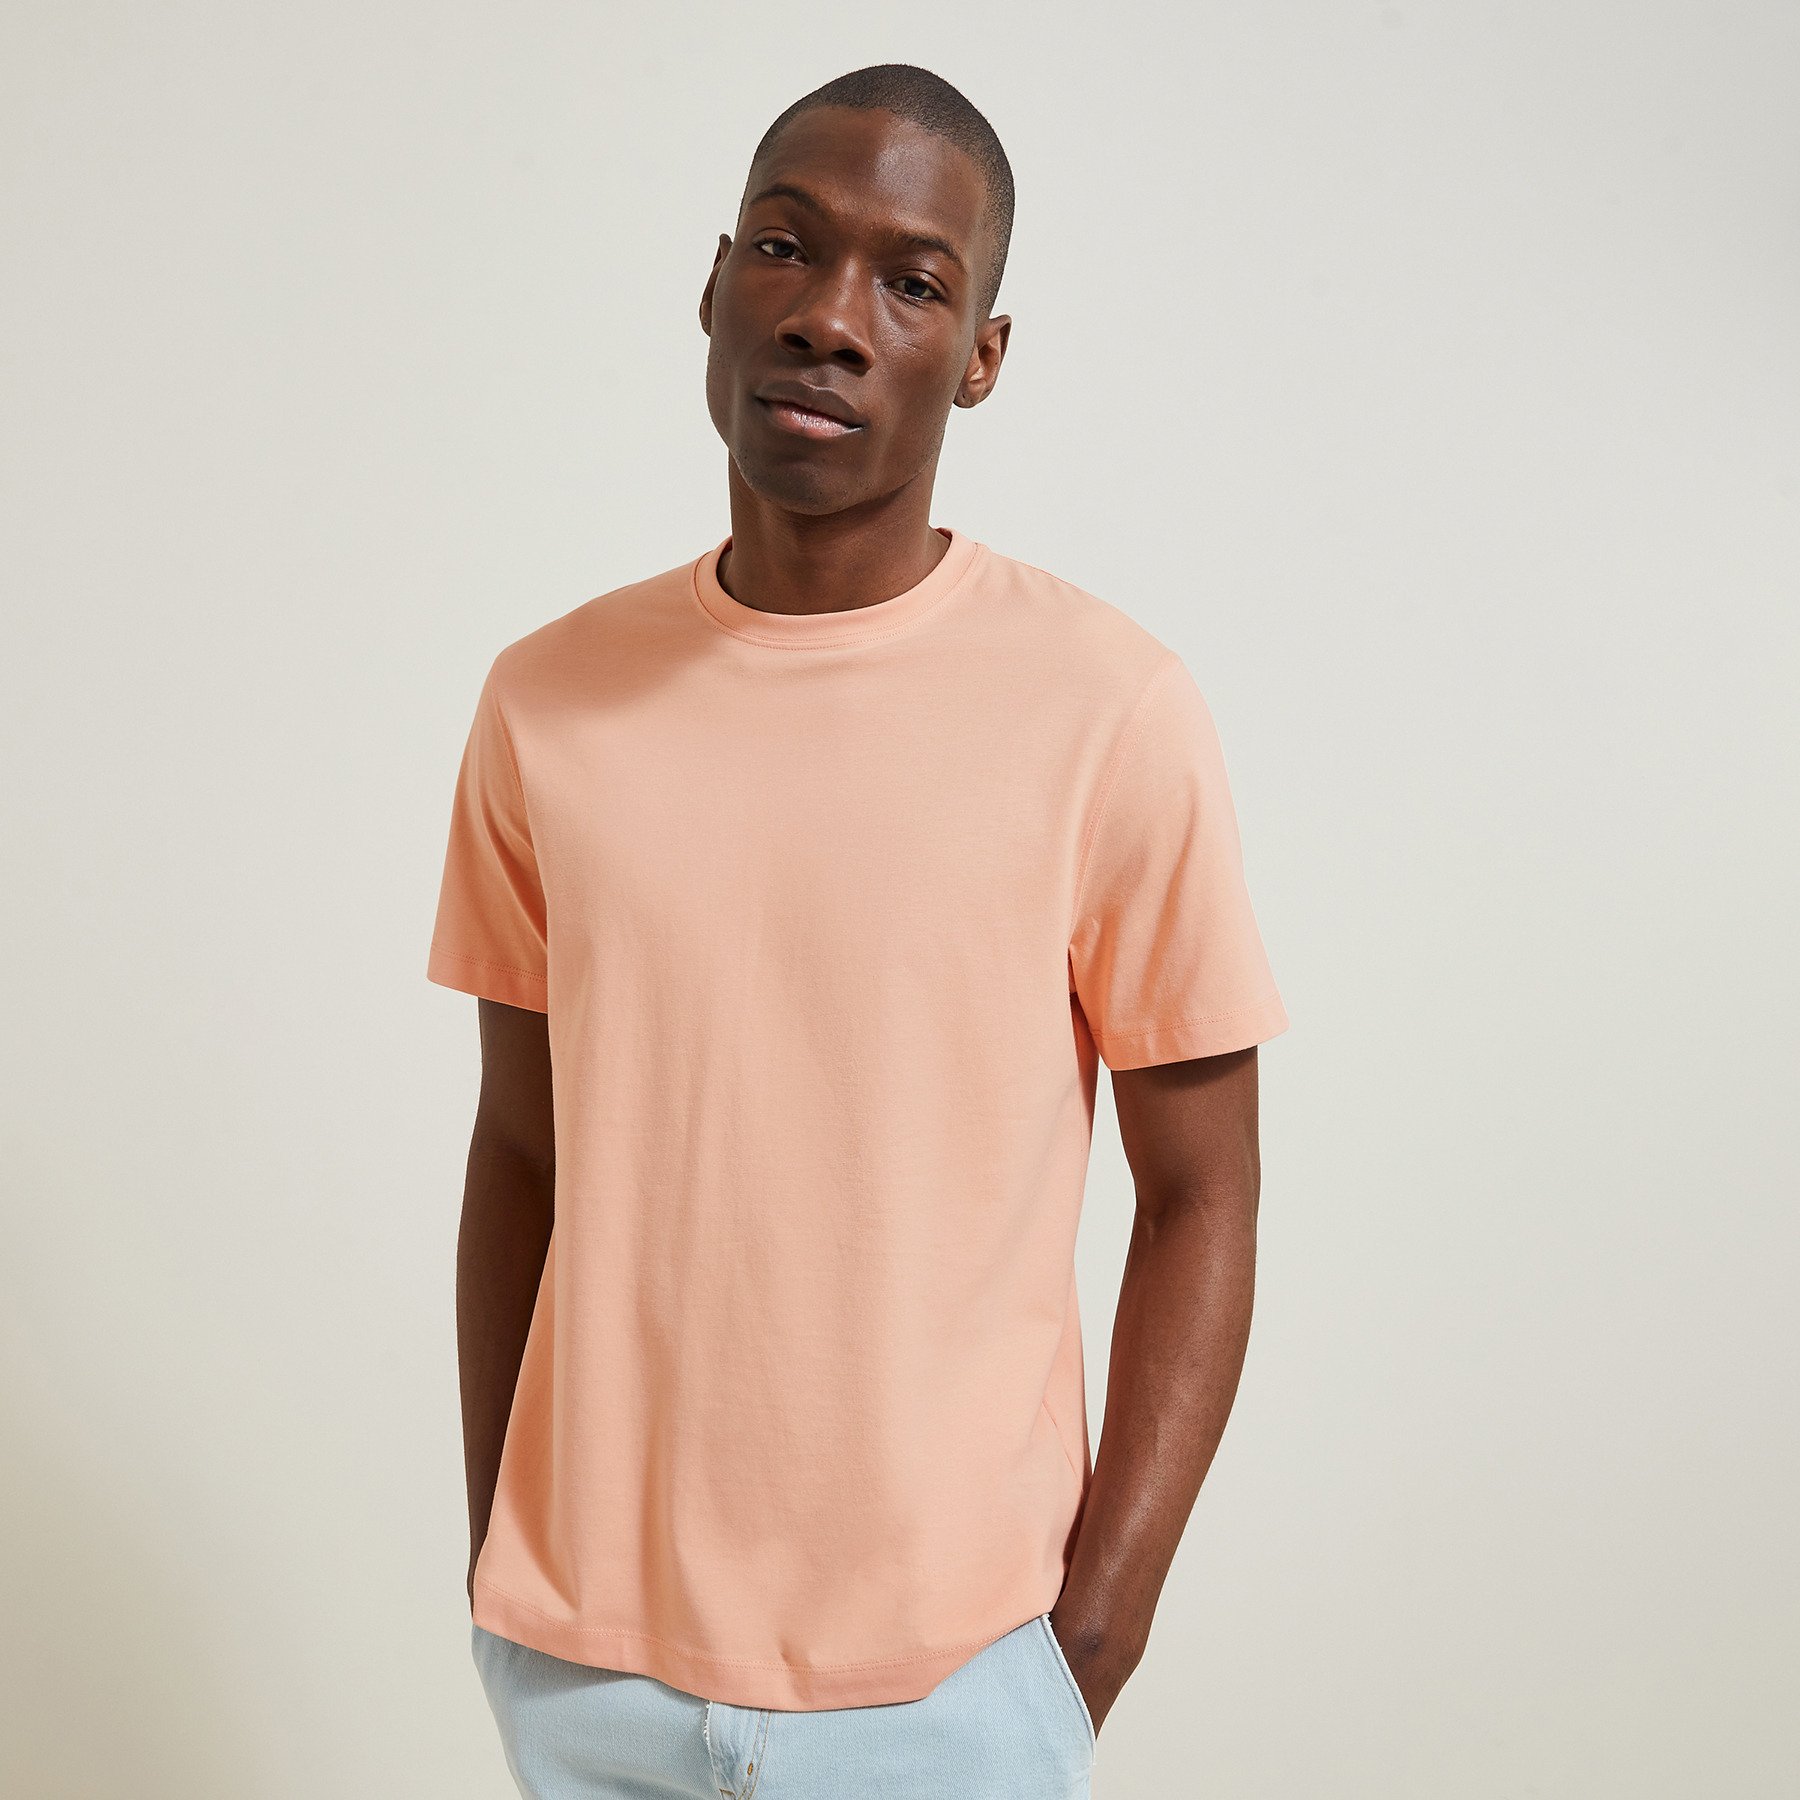 Tee shirt "le parfait by JULES" Orange S 100% Coton Homme